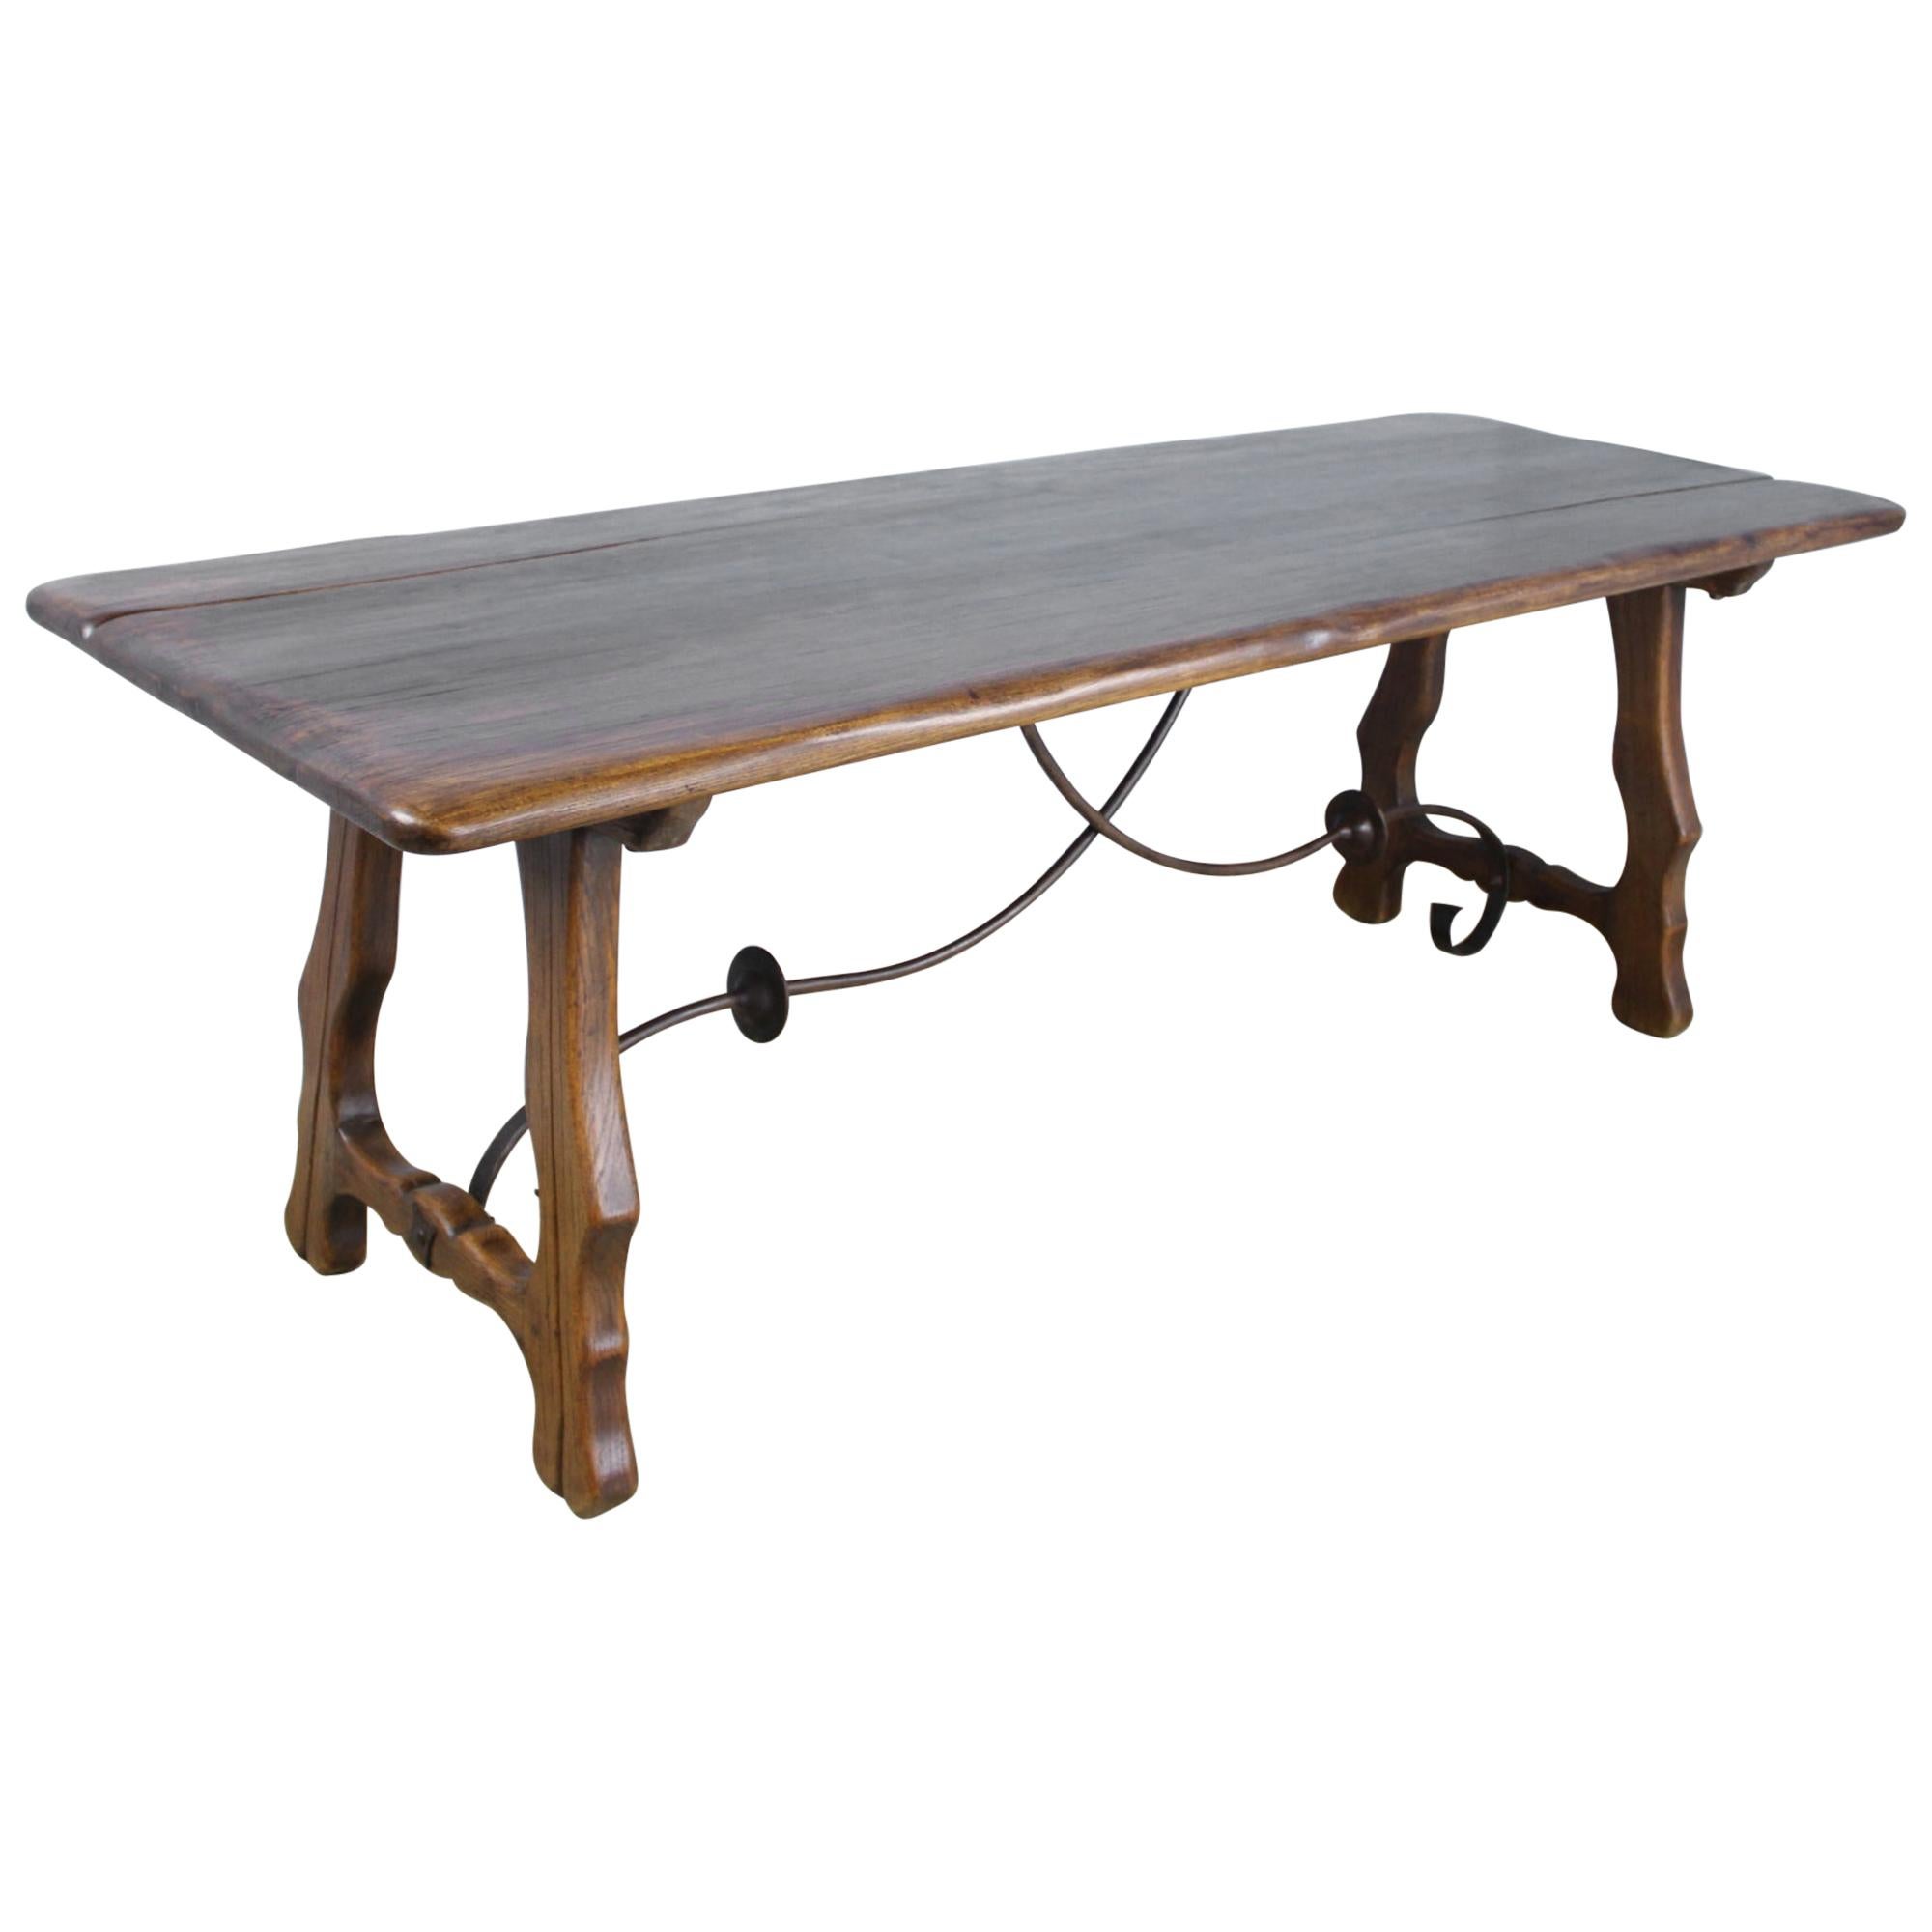 Spanish Iron Based Oak Table